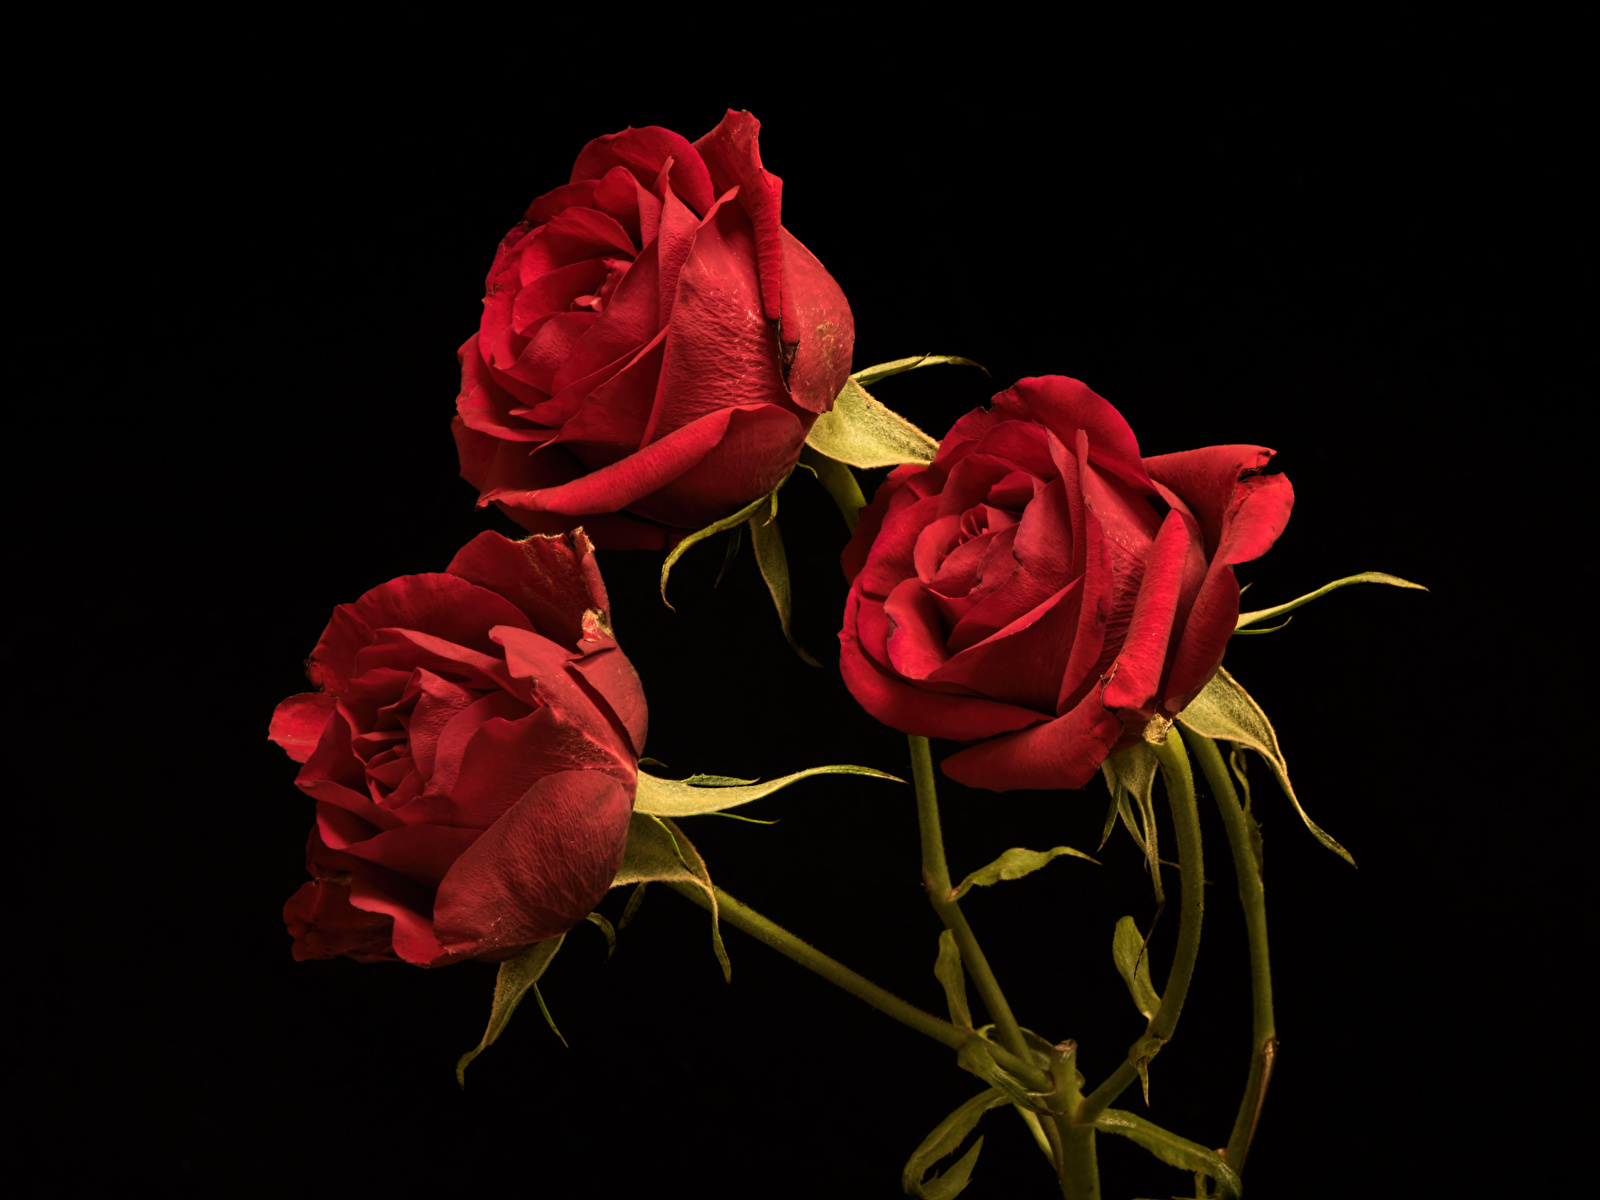 Картинки Розы Красный цветок Трое 3 на черном фоне 1600x1200 роза красная красные красных Цветы три втроем Черный фон